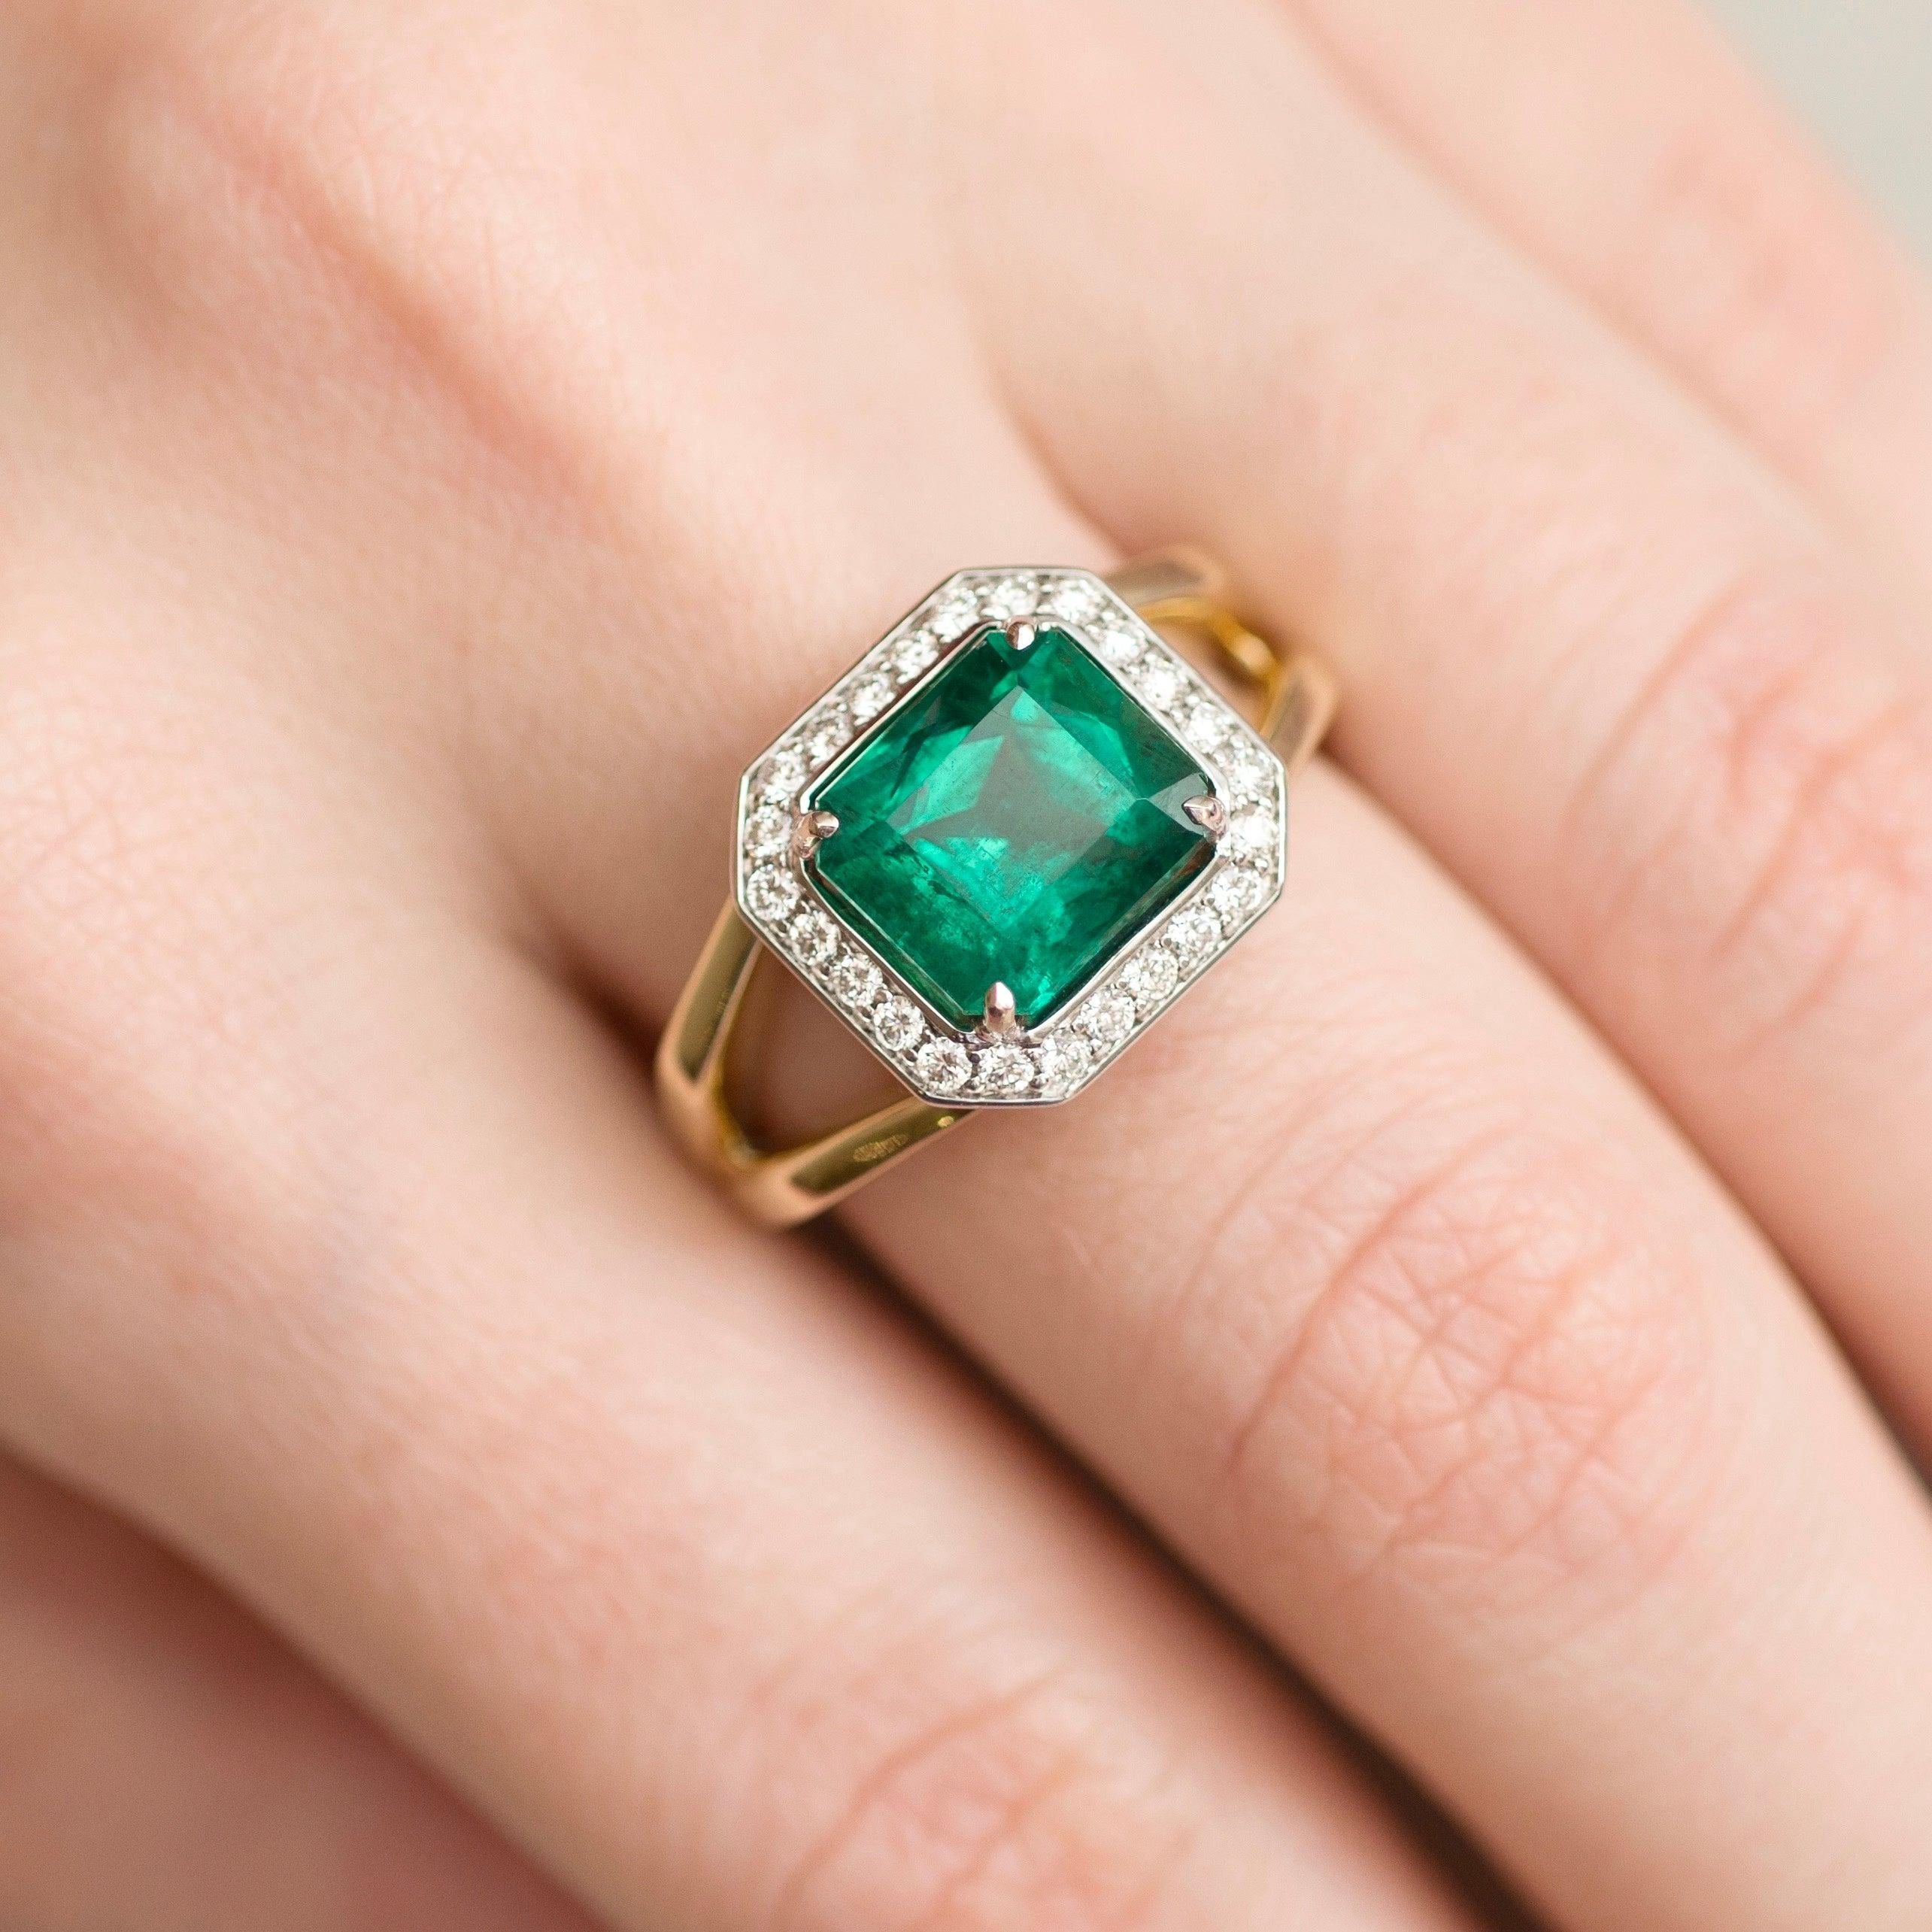 For Sale:  3 Carat Intense Green Natural Emerald Diamonds 18 Karat Yellow White Gold Ring 3